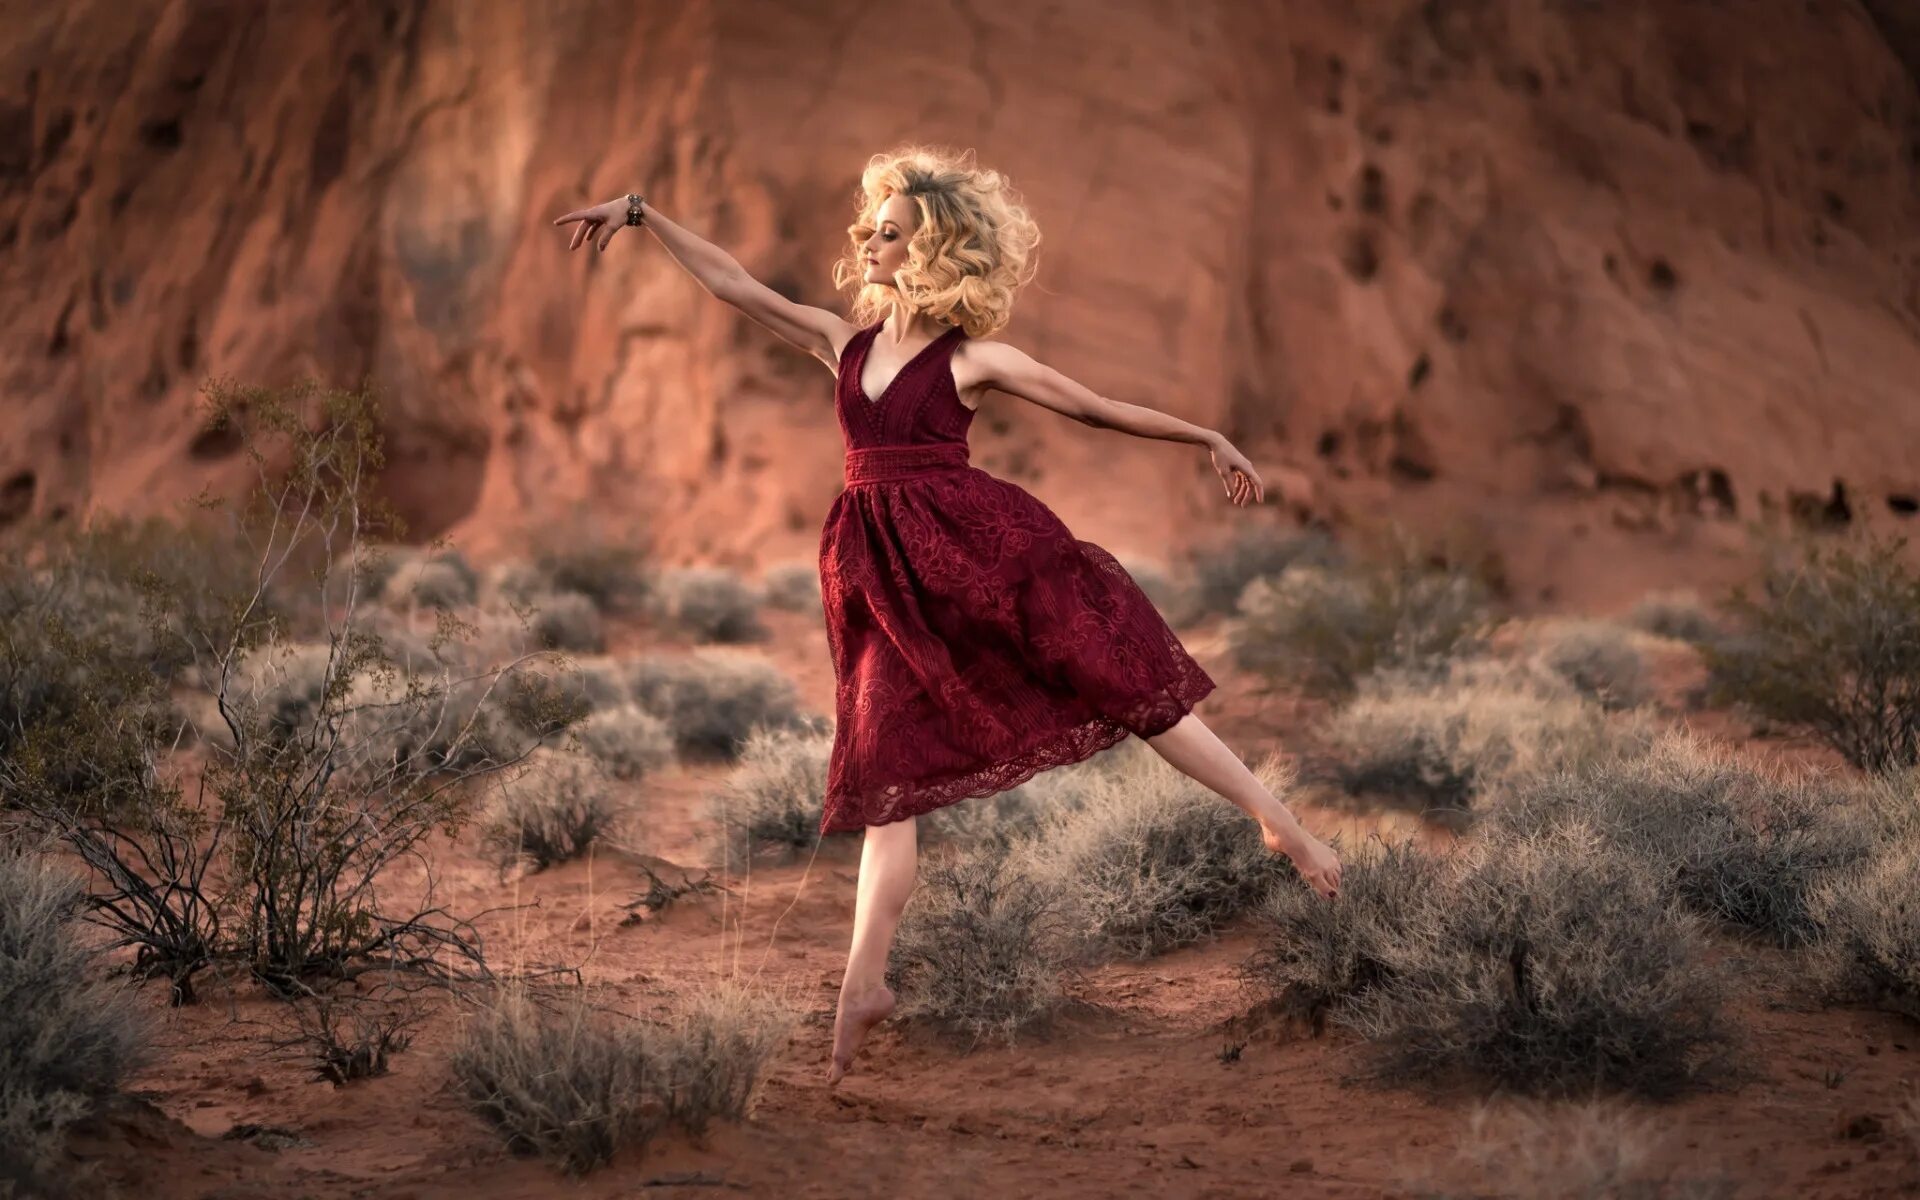 Девчонка пляшет. Девушка бежит в платье. Девушка в платье. Девушка танцует. Девушка танцует в платье.